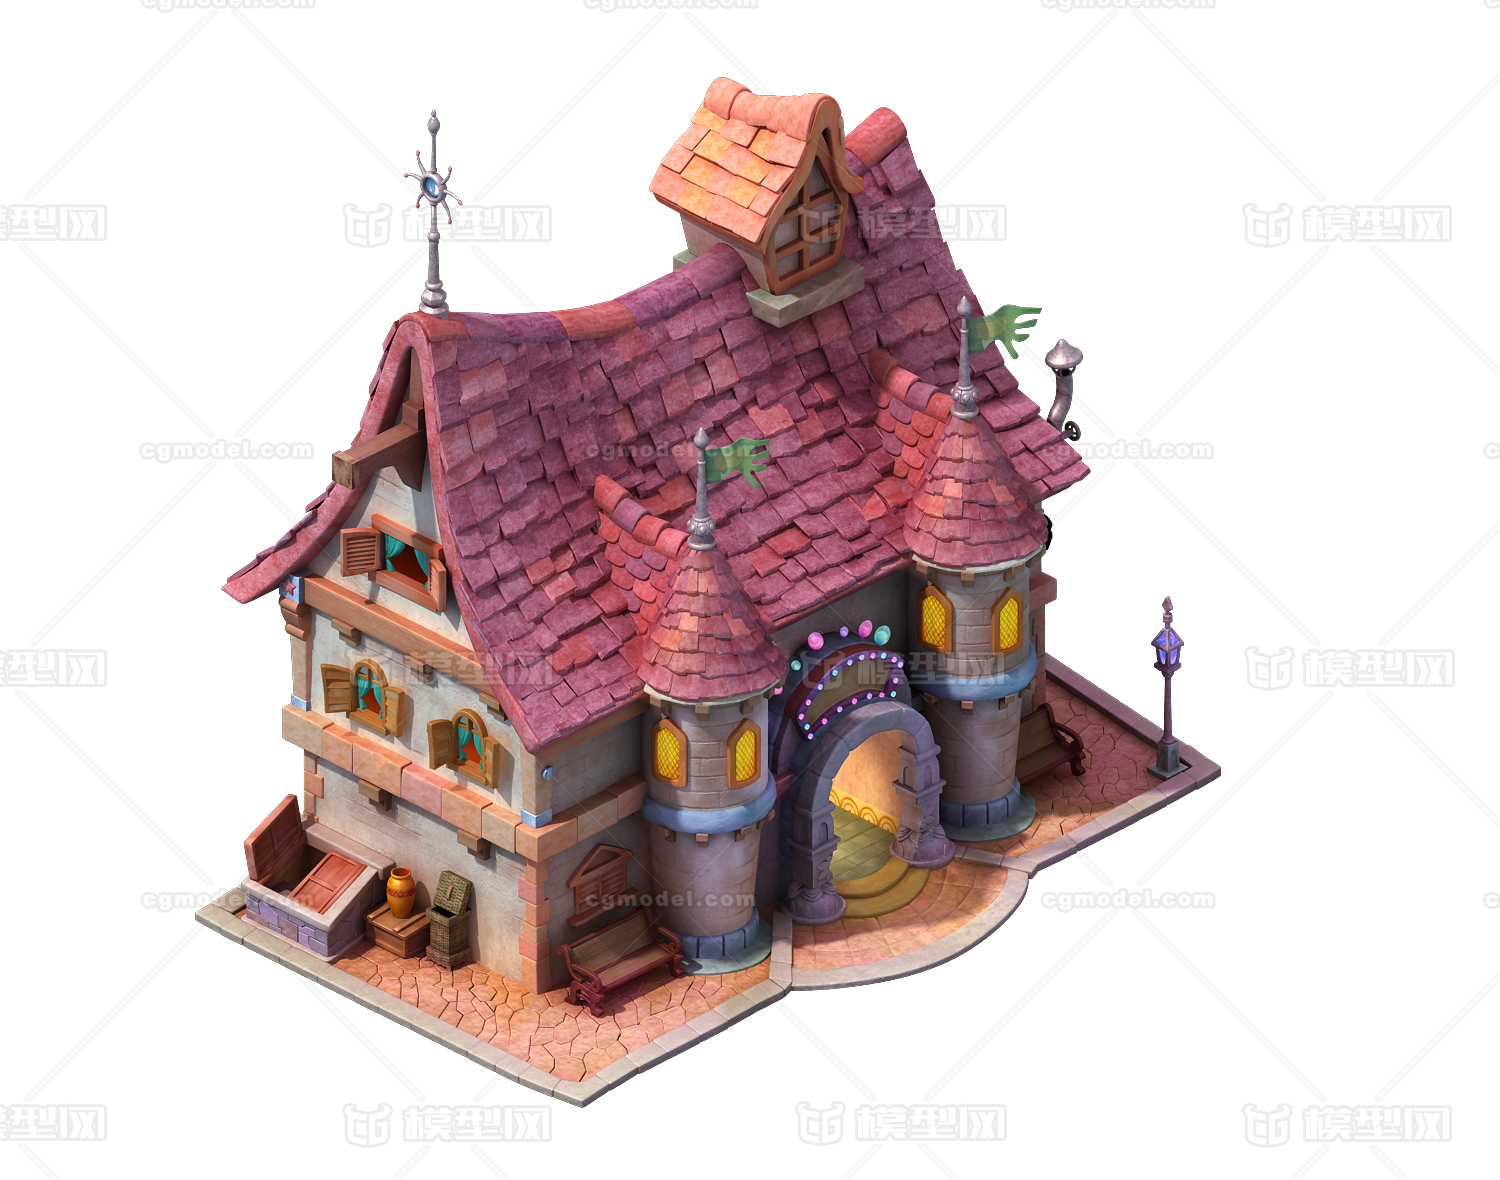 欧式民房 古代欧洲平民房屋建筑模型-私人住宅模型库-3ds Max(.max)模型下载-cg模型网